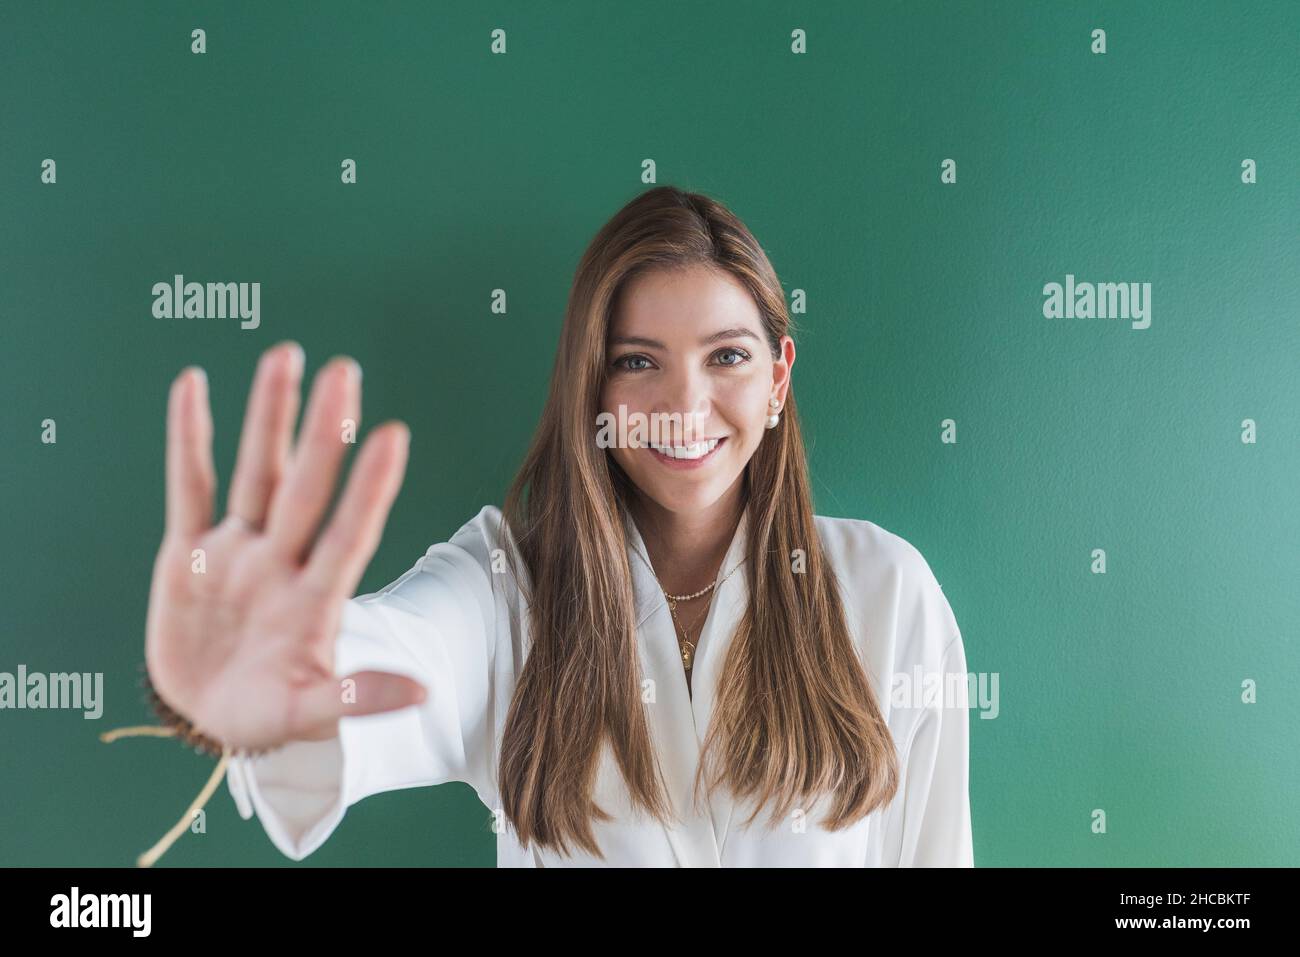 Lächelnde Frau mit Stopphandzeichen vor grünem Hintergrund Stockfoto